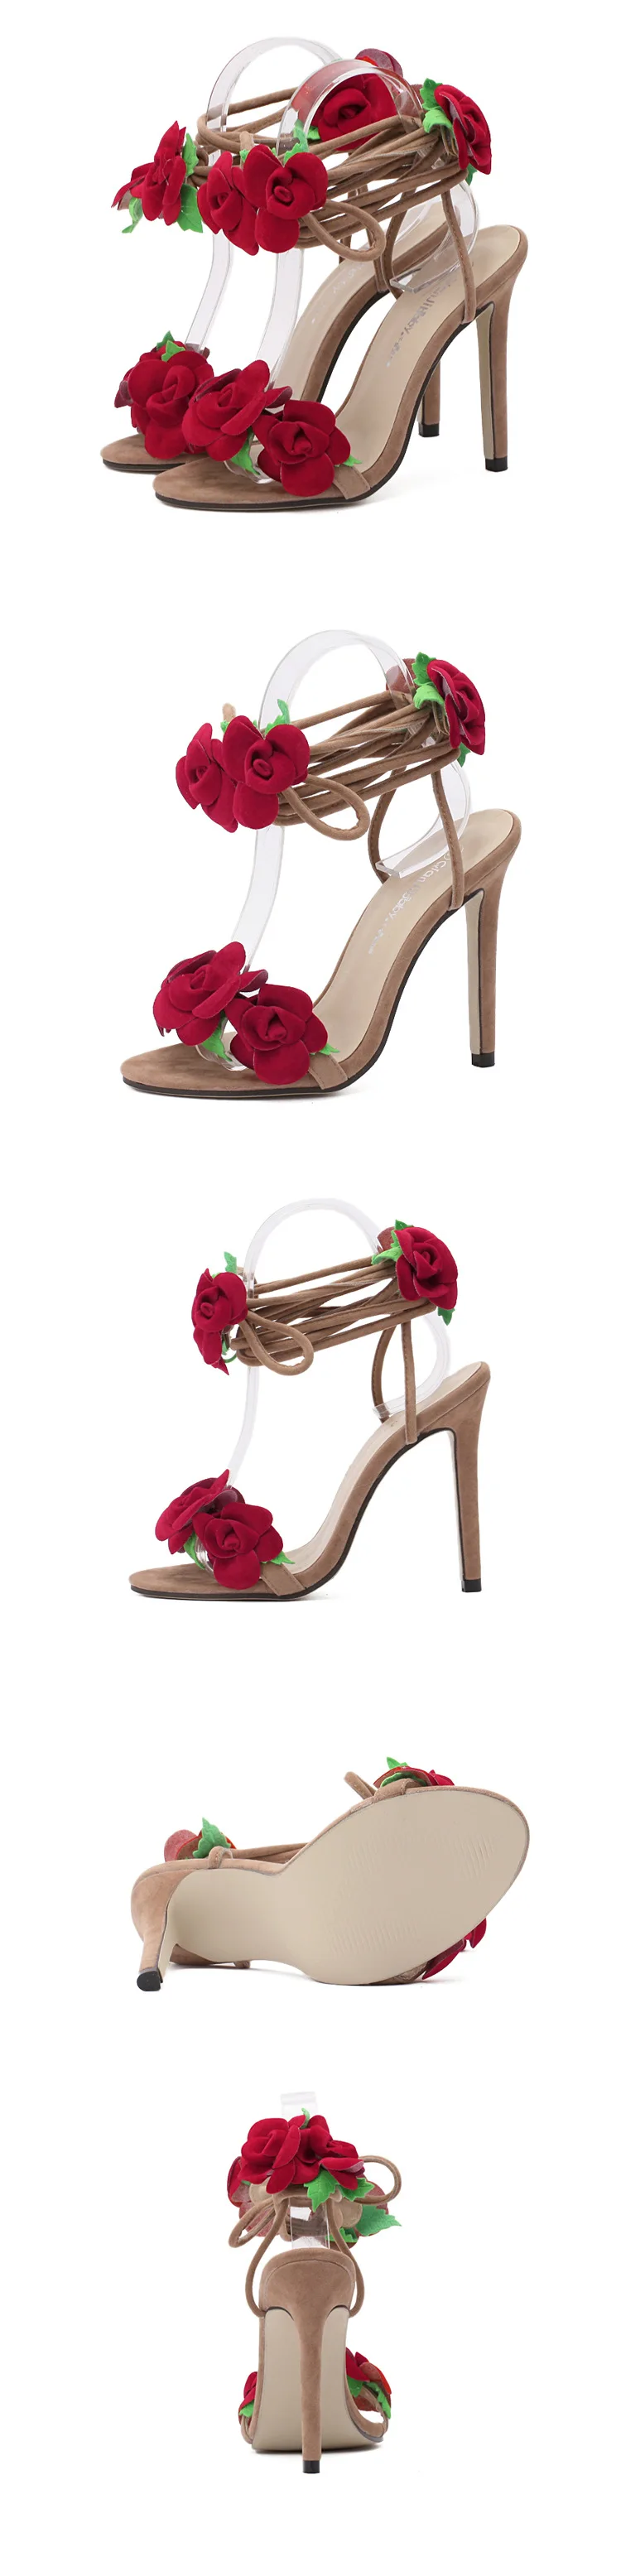 Ltarta/ босоножки со звездами, красная подвязка розы, женская обувь на высоком каблуке, сандалии большого размера, красные сандалии с цветами, модная женская обувь 42 ZL-558-10